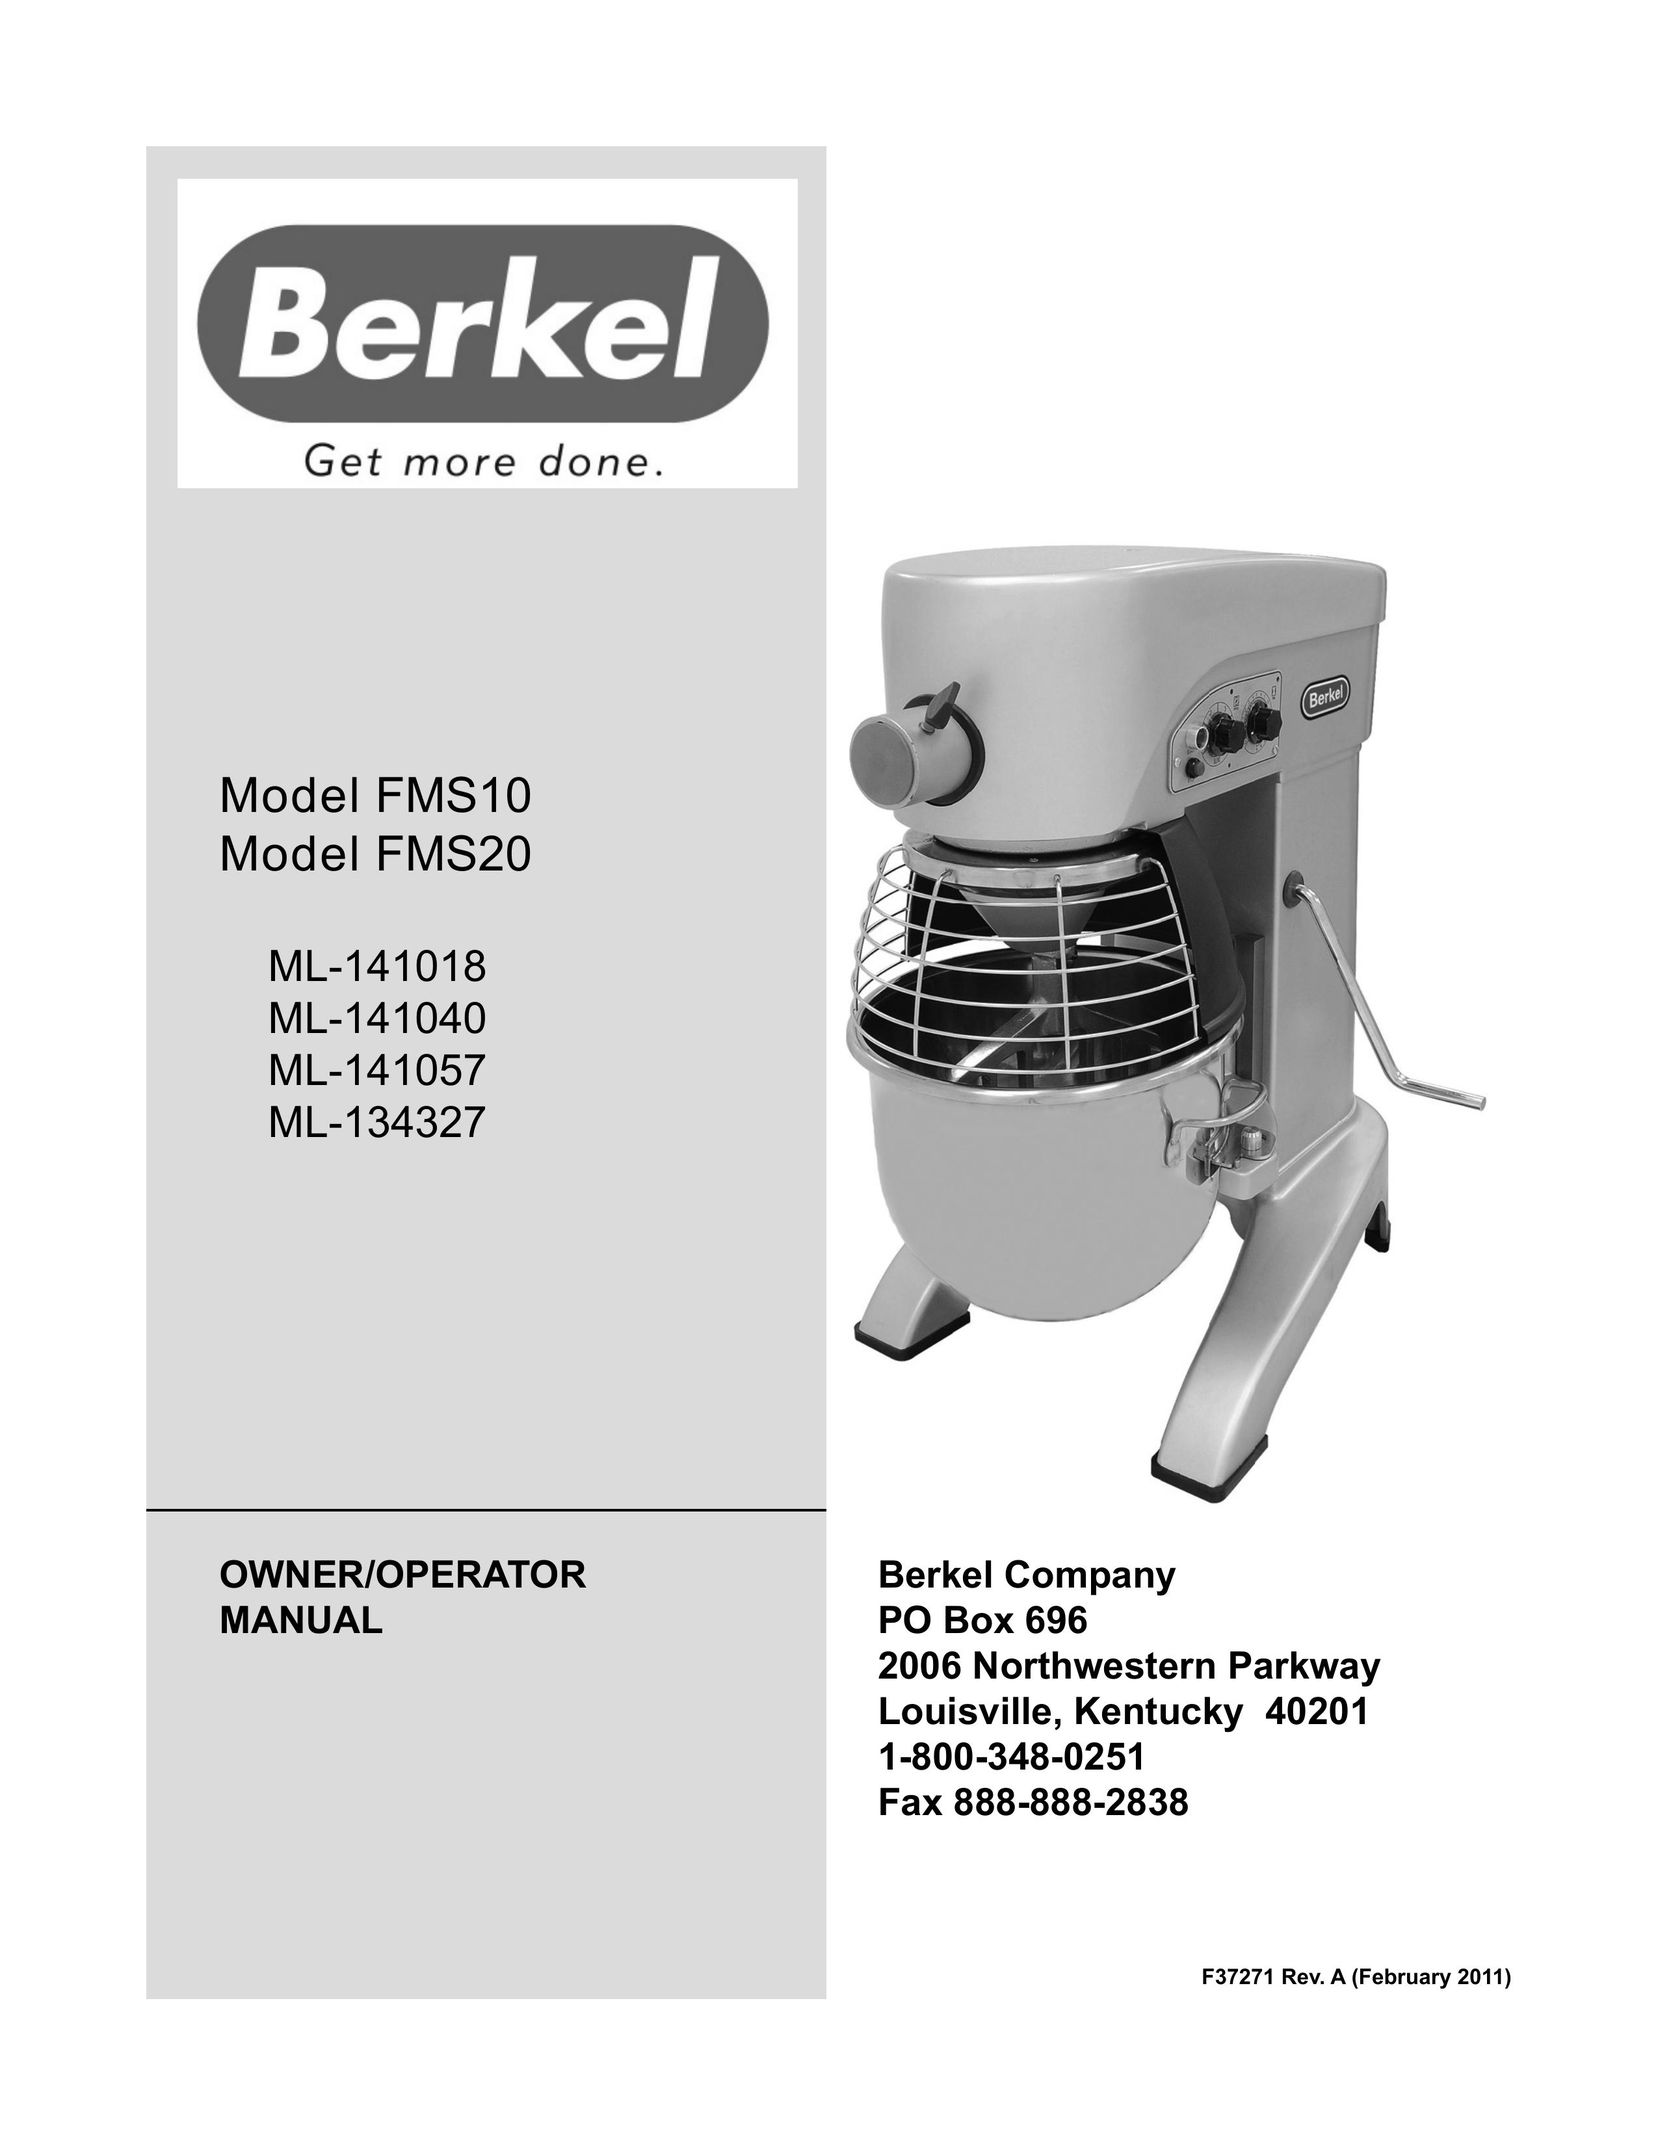 Berkel FMS10 Mixer User Manual